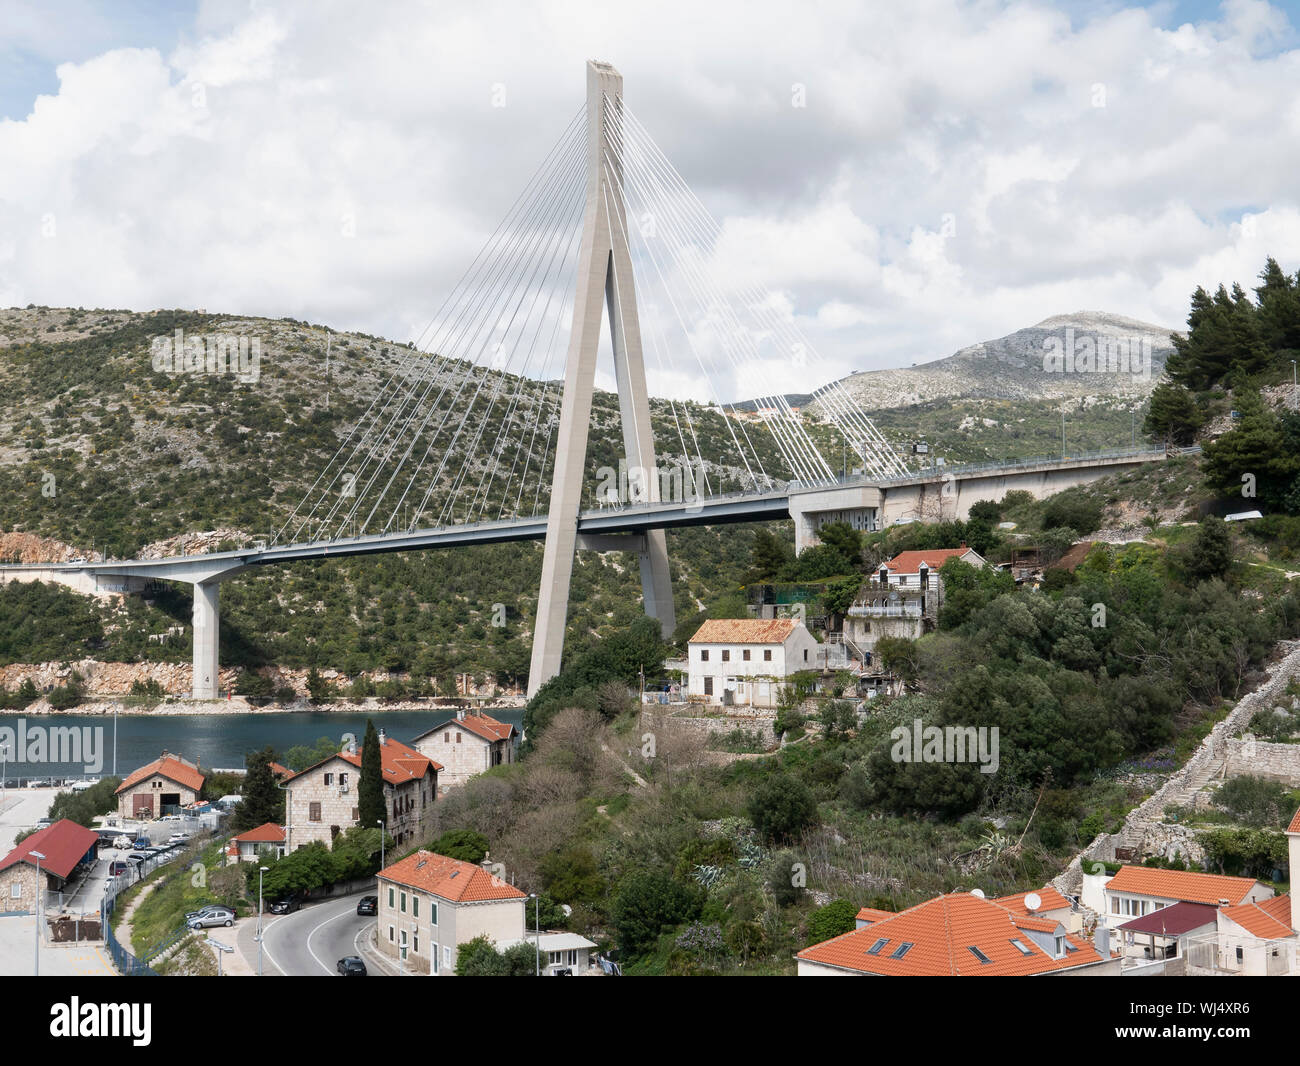 Franjo Tudjman bridge and village houses, Dubrovnik, Croatia Stock Photo